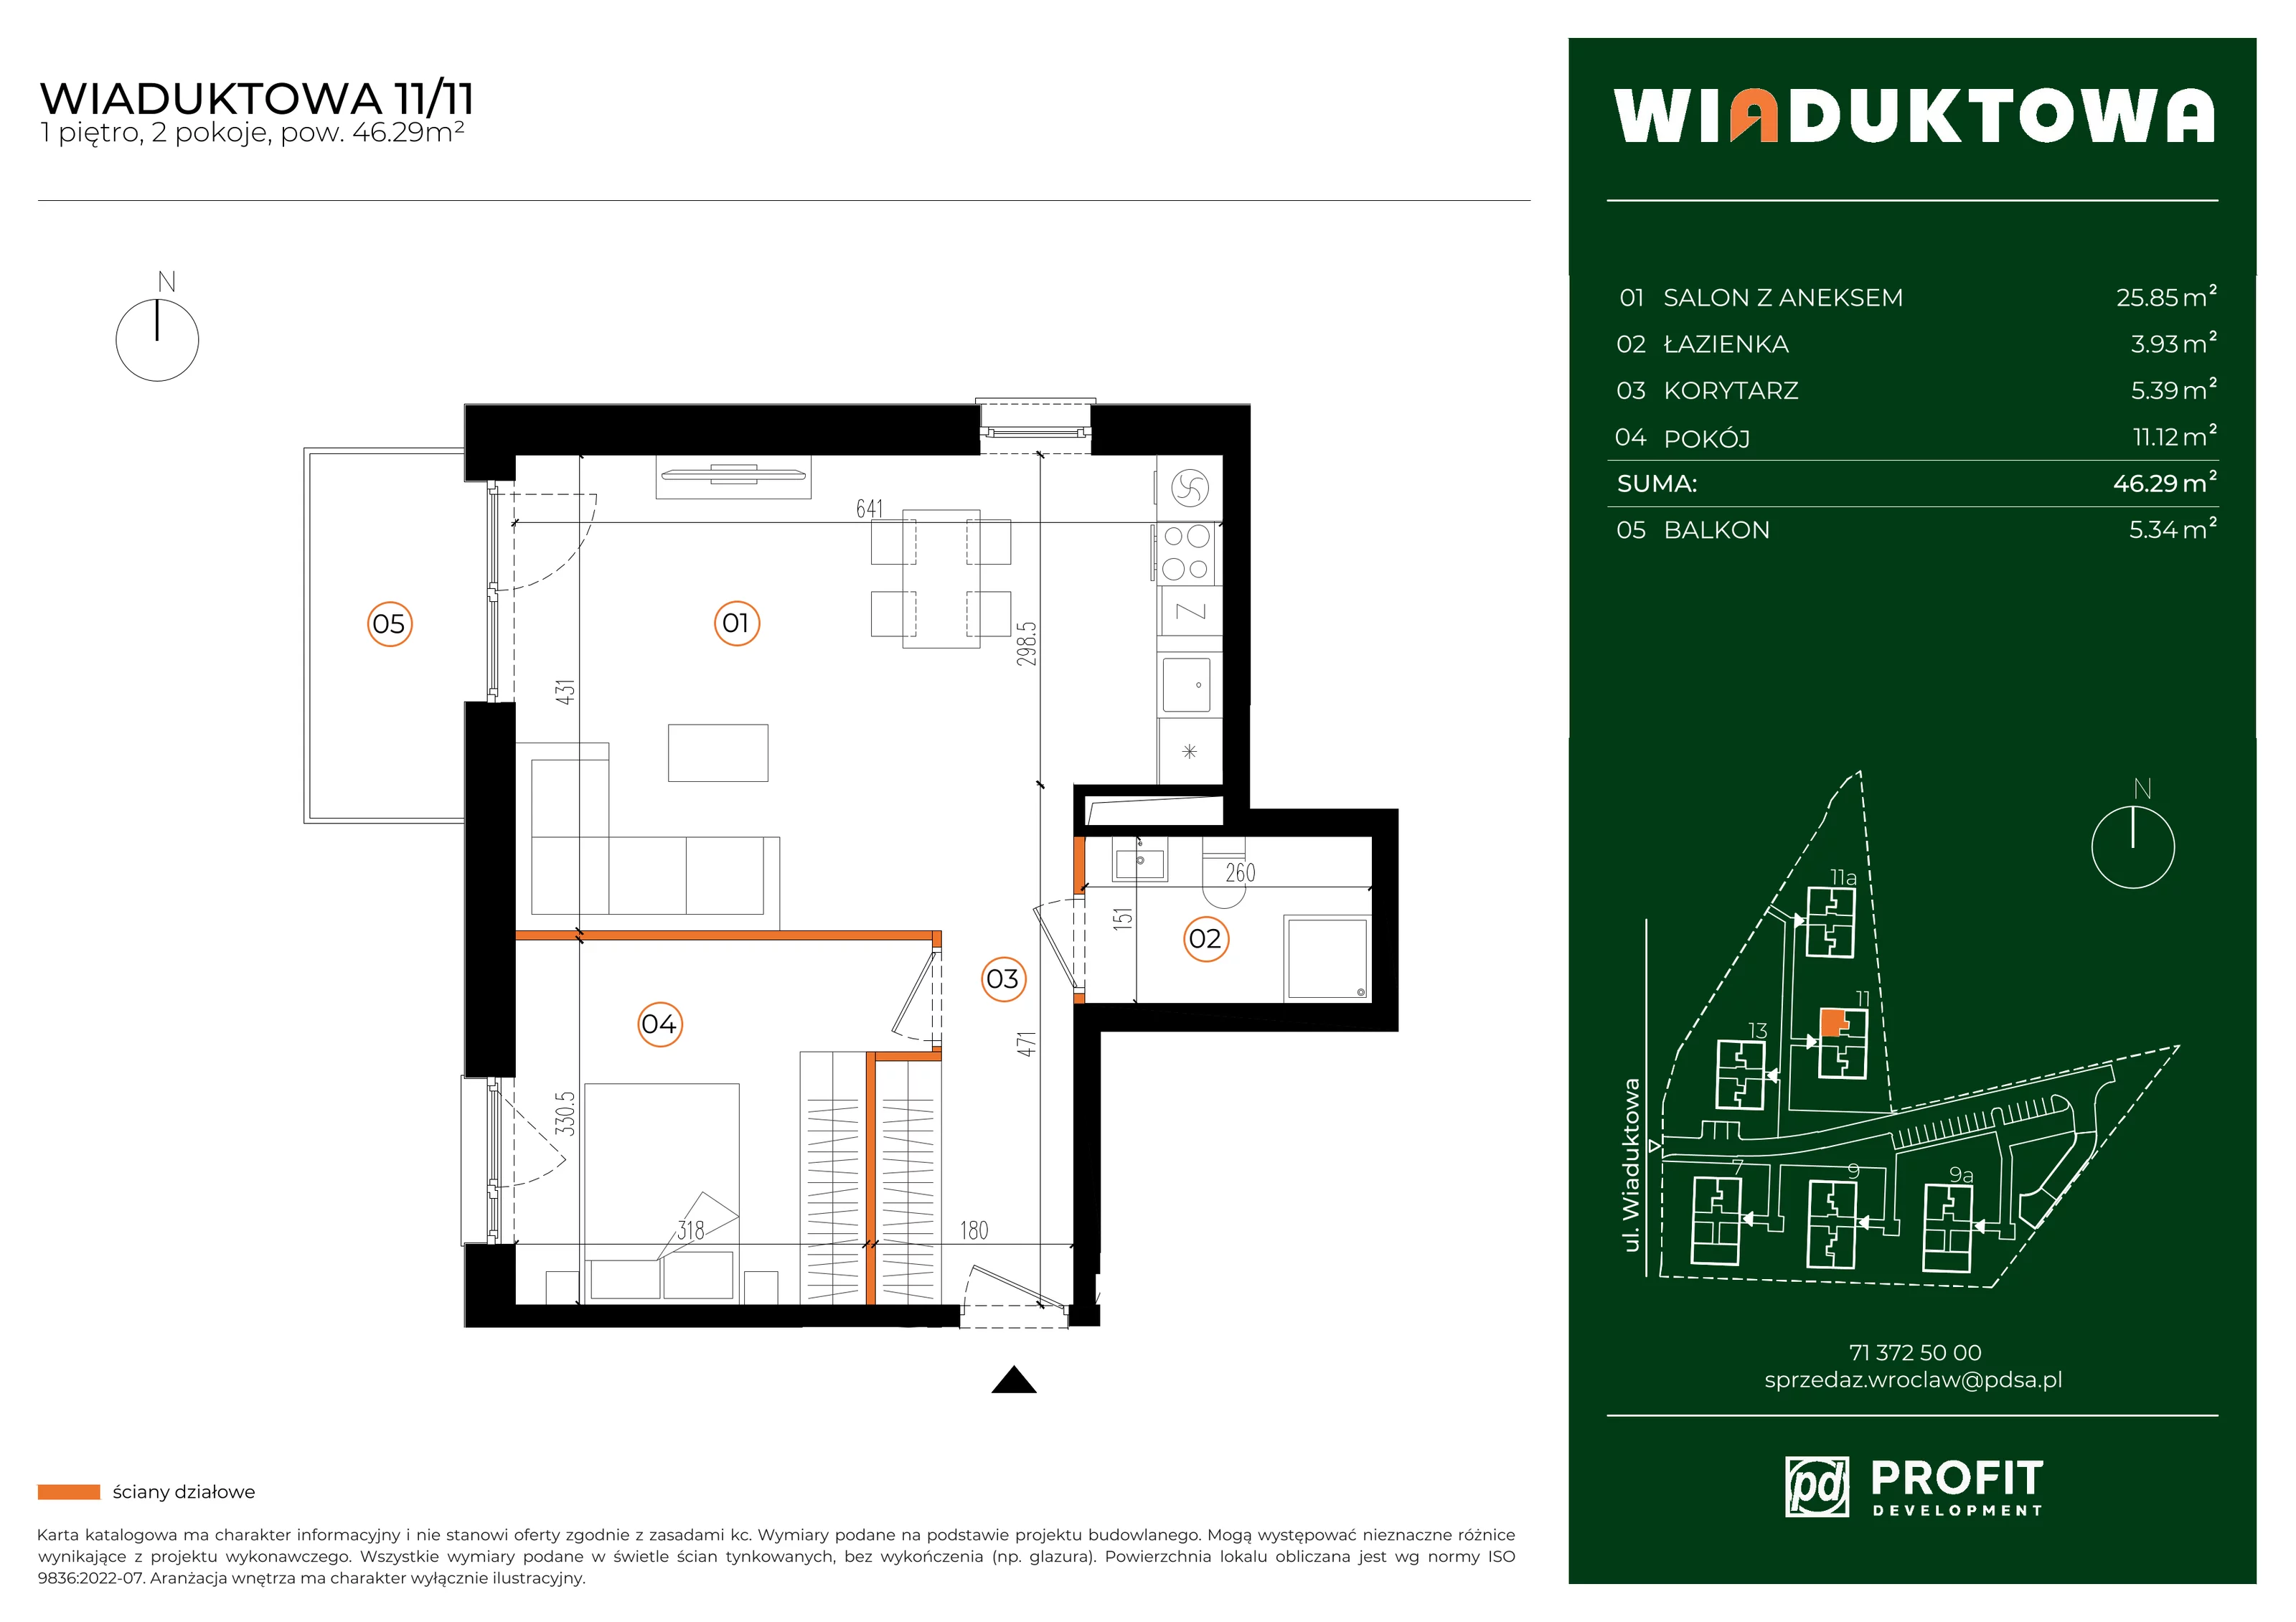 Mieszkanie 46,29 m², piętro 1, oferta nr WI/11/11, Wiaduktowa, Wrocław, Krzyki-Partynice, Krzyki, ul. Wiaduktowa